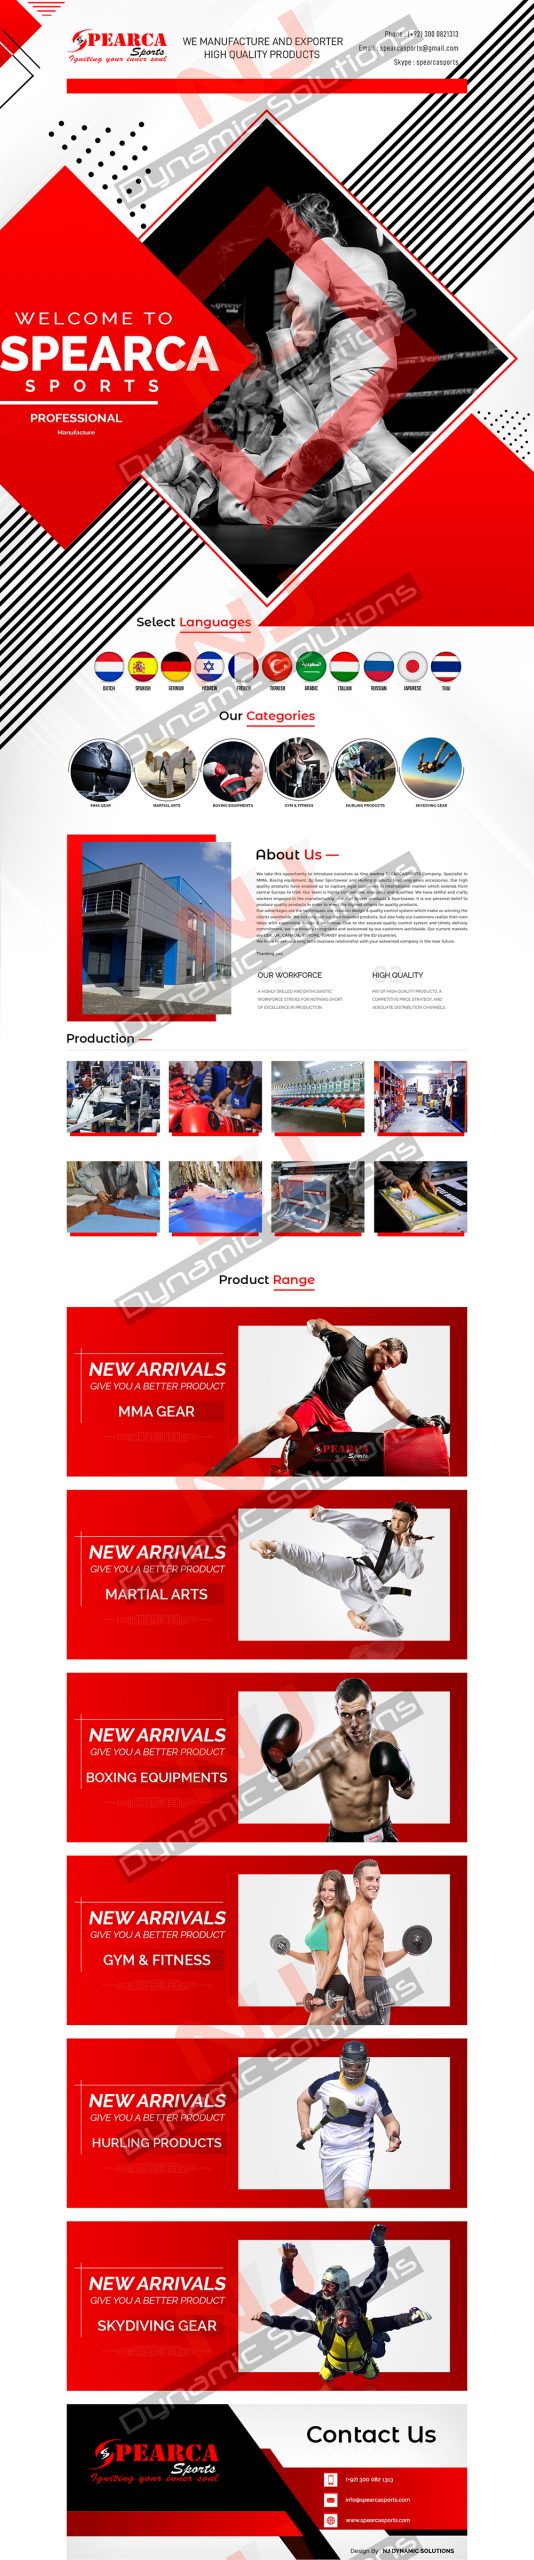 Spearca Sports Alibaba Minisite Design